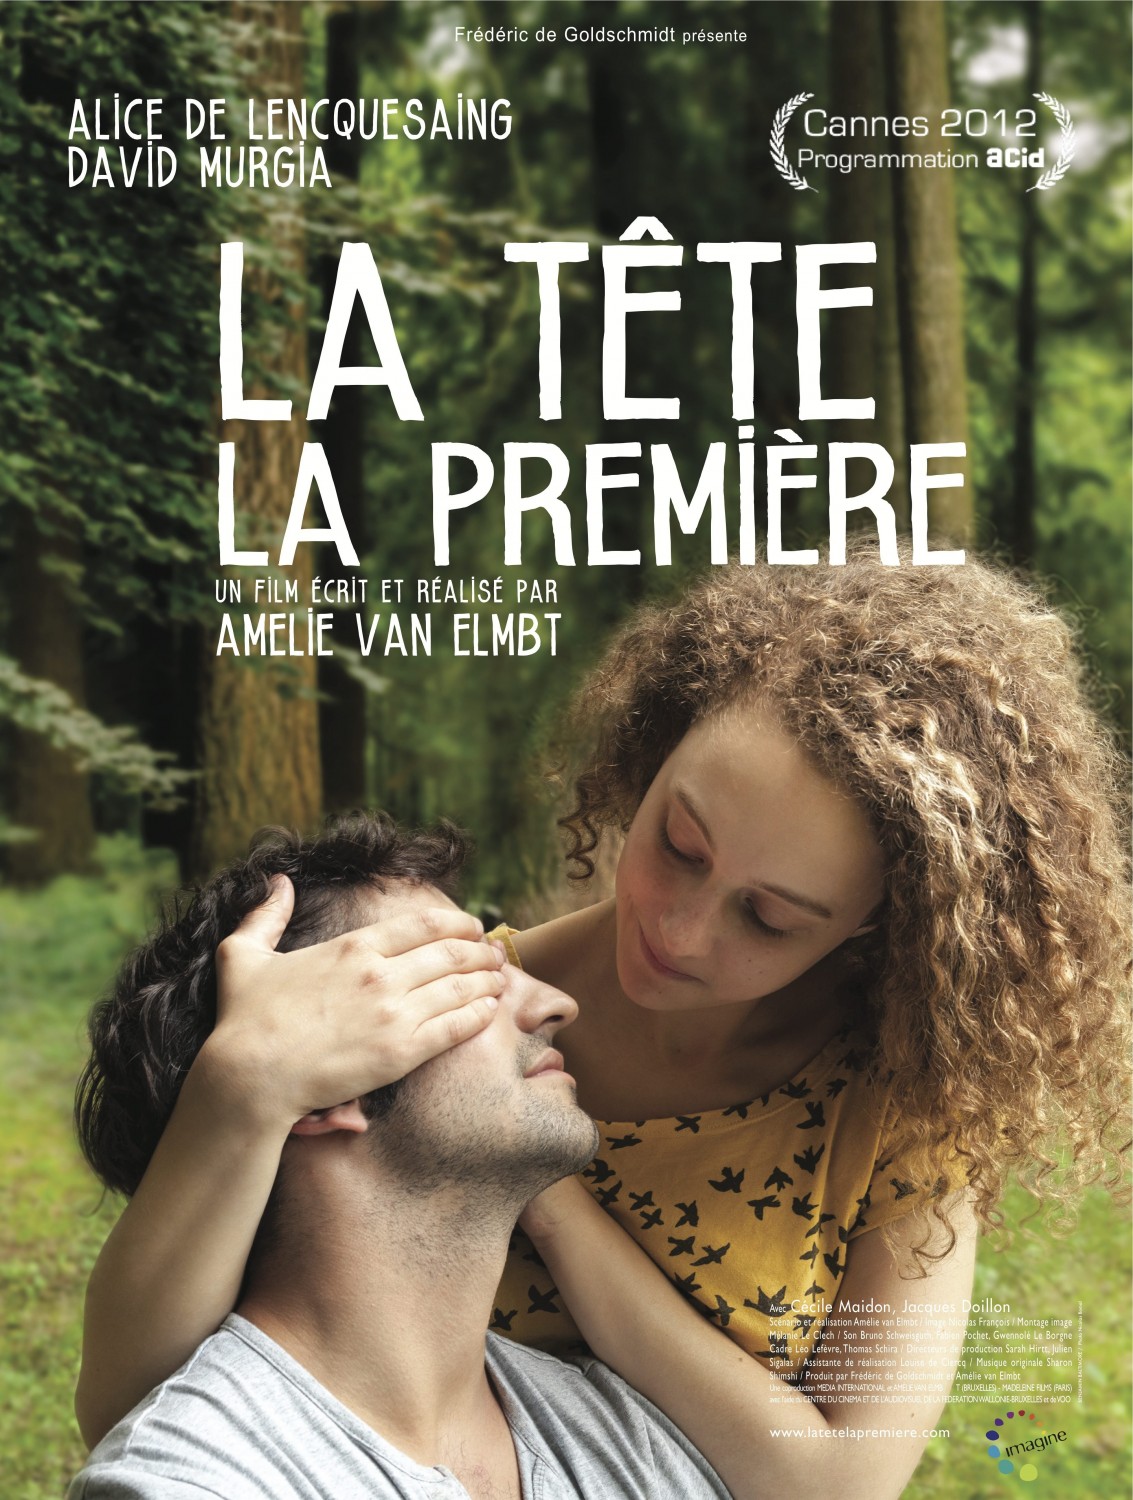 Extra Large Movie Poster Image for La tête la première 